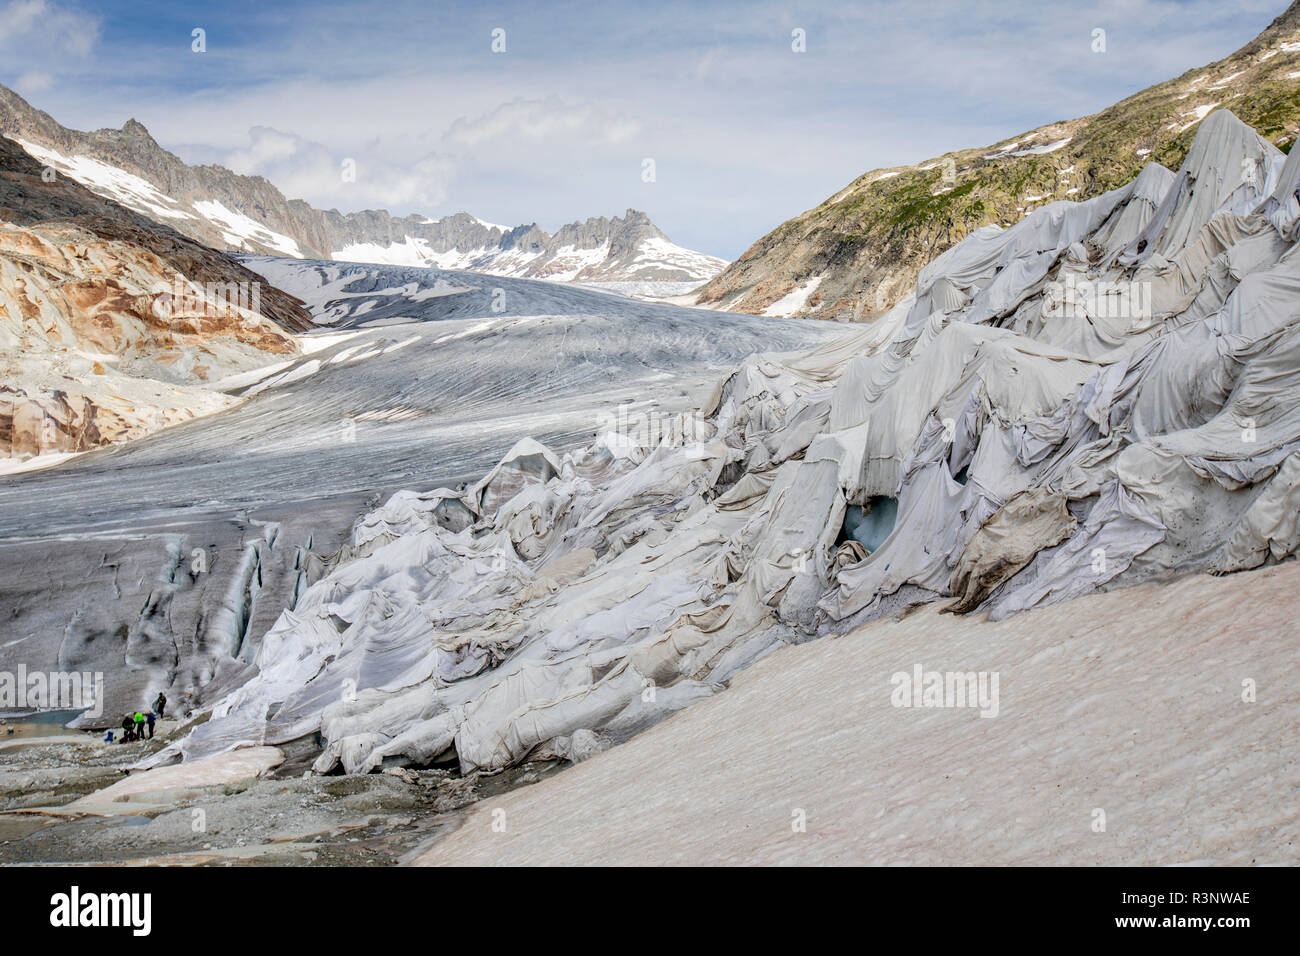 Touristen am Rhonegletscher in der Schweiz. Nach einem Winter mit viel Schnee, den meisten war es weg, wenn diese imae am 14. Juli 2018 getroffen wurde, so dass der dunkler Eis. Während Schnee eine brillante Reflektor ist der Energie von der Sonne, der dunkler Eis nimmt die Energie statt, beschleunigt das Abschmelzen der Gletscher. Die Farbe und der Dunkelheit von Gletschereis variieren in der ganzen Welt, je nach Aufbau der Verschmutzung, Alter des Eises, Partikel vom Eis und durch Mikroorganismen im Eis. Das gletschereis ist jedoch selten weiß wie Schnee. Mit kürzeren Wintern und verschwindende Schnee Cove Stockfoto